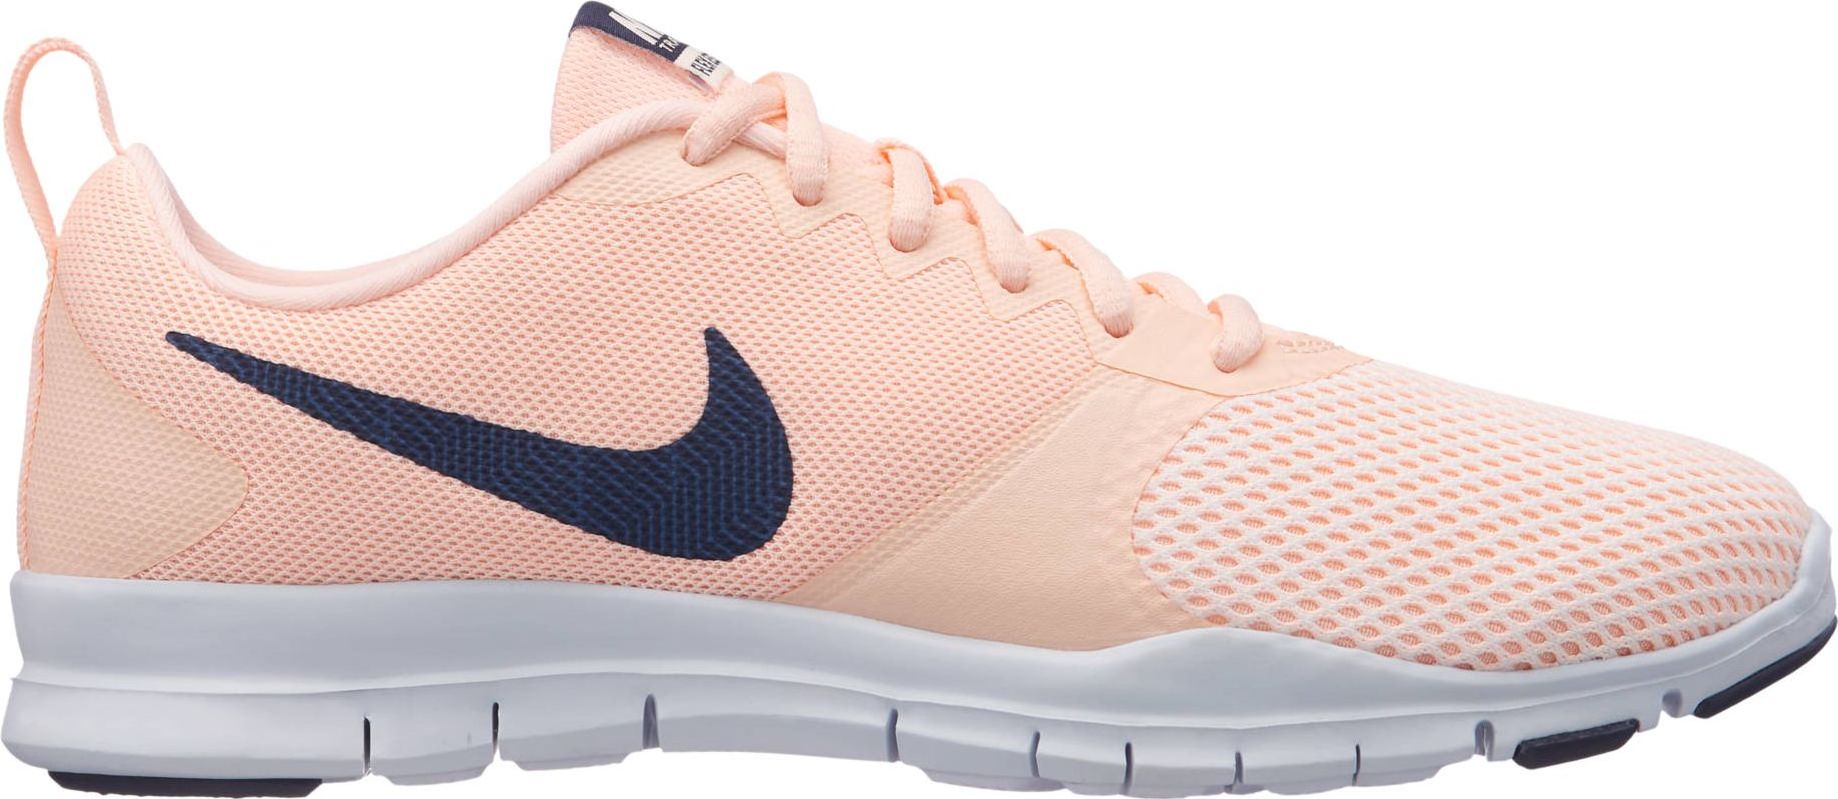 Кроссовки для фитнеса женские Nike Flex Essential, цвет: розовый. 924344-800. Размер 5,5 (35)